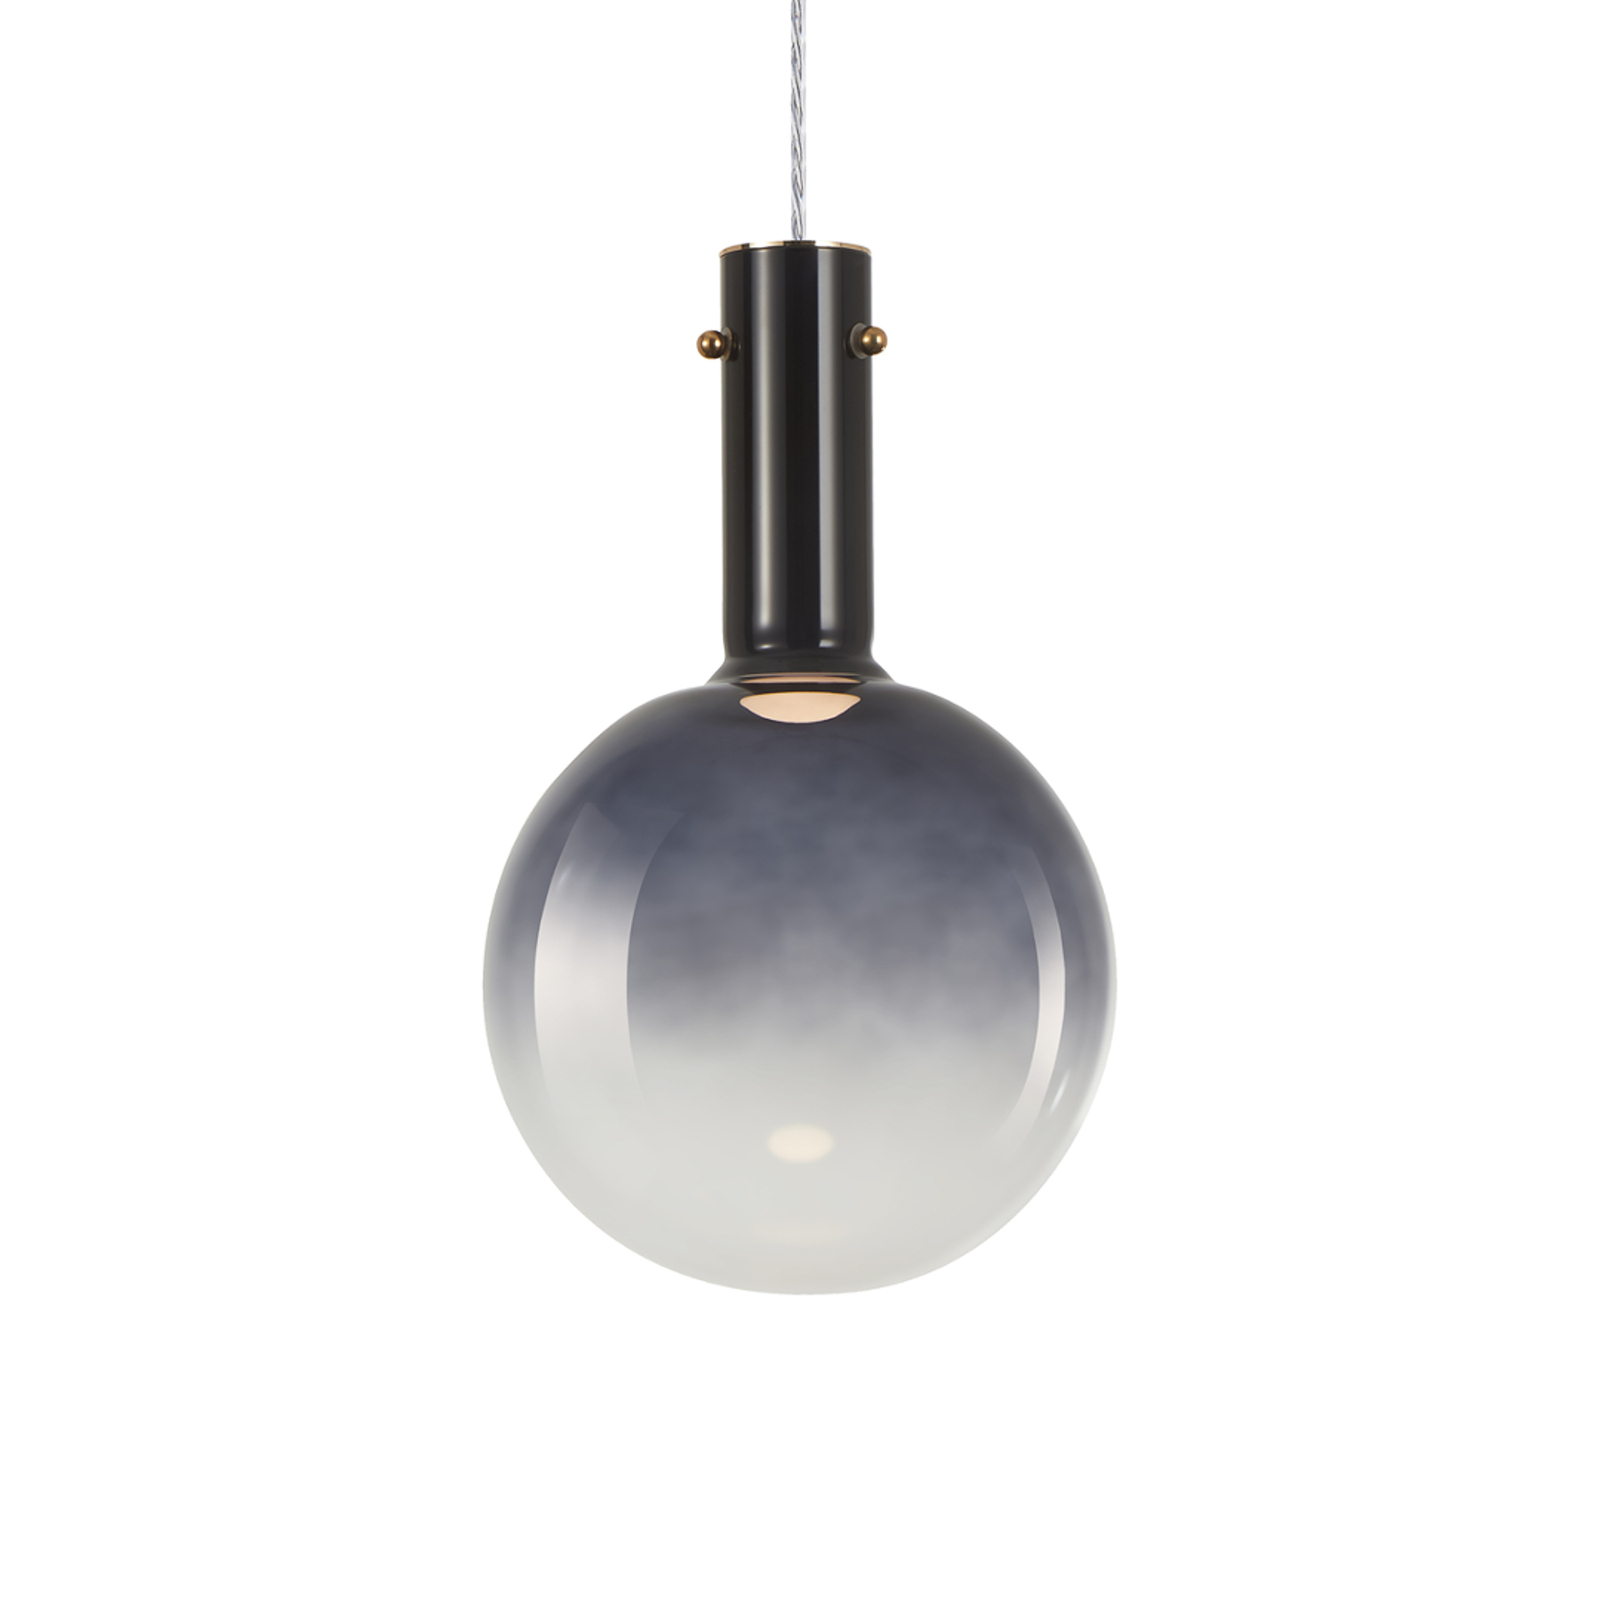 Toronto hanglamp, grijs-transparante glazen bol, Ø 25 cm